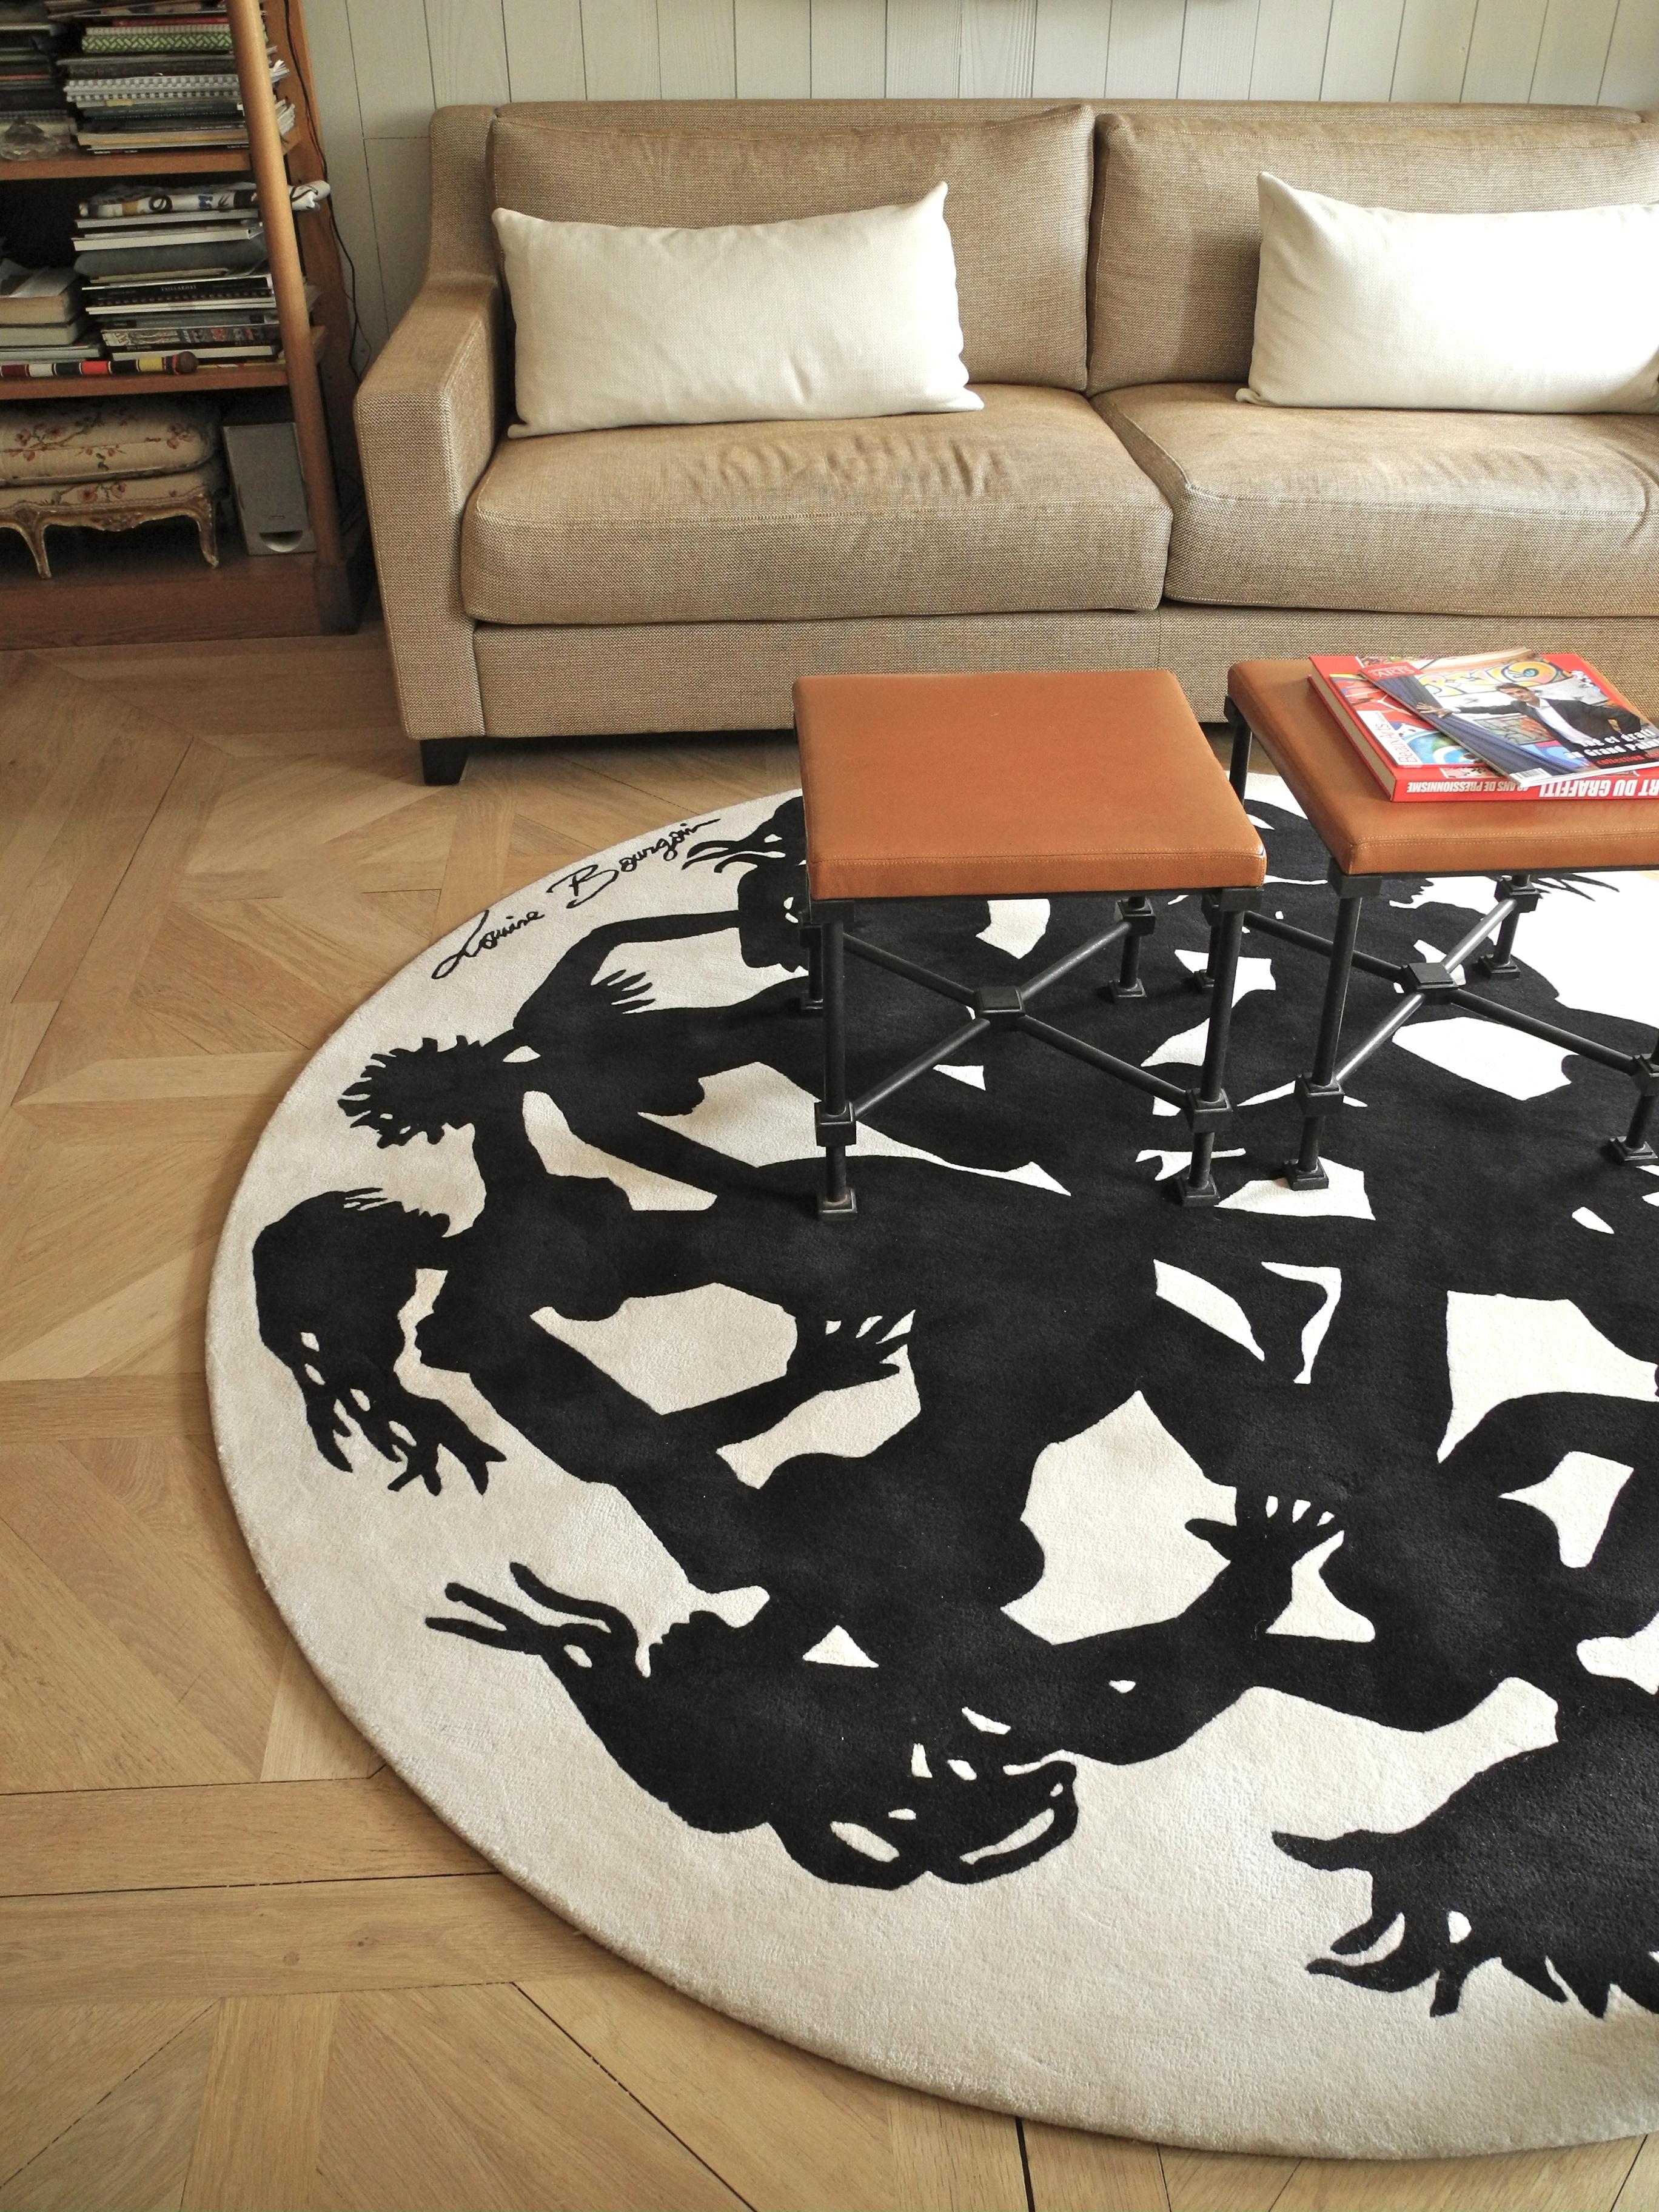 Teppich mit Frauensilhouetten #couchtisch #teppich #wohnzimmer #kissen #runderteppich #sofa #tisch ©Pierre Frey